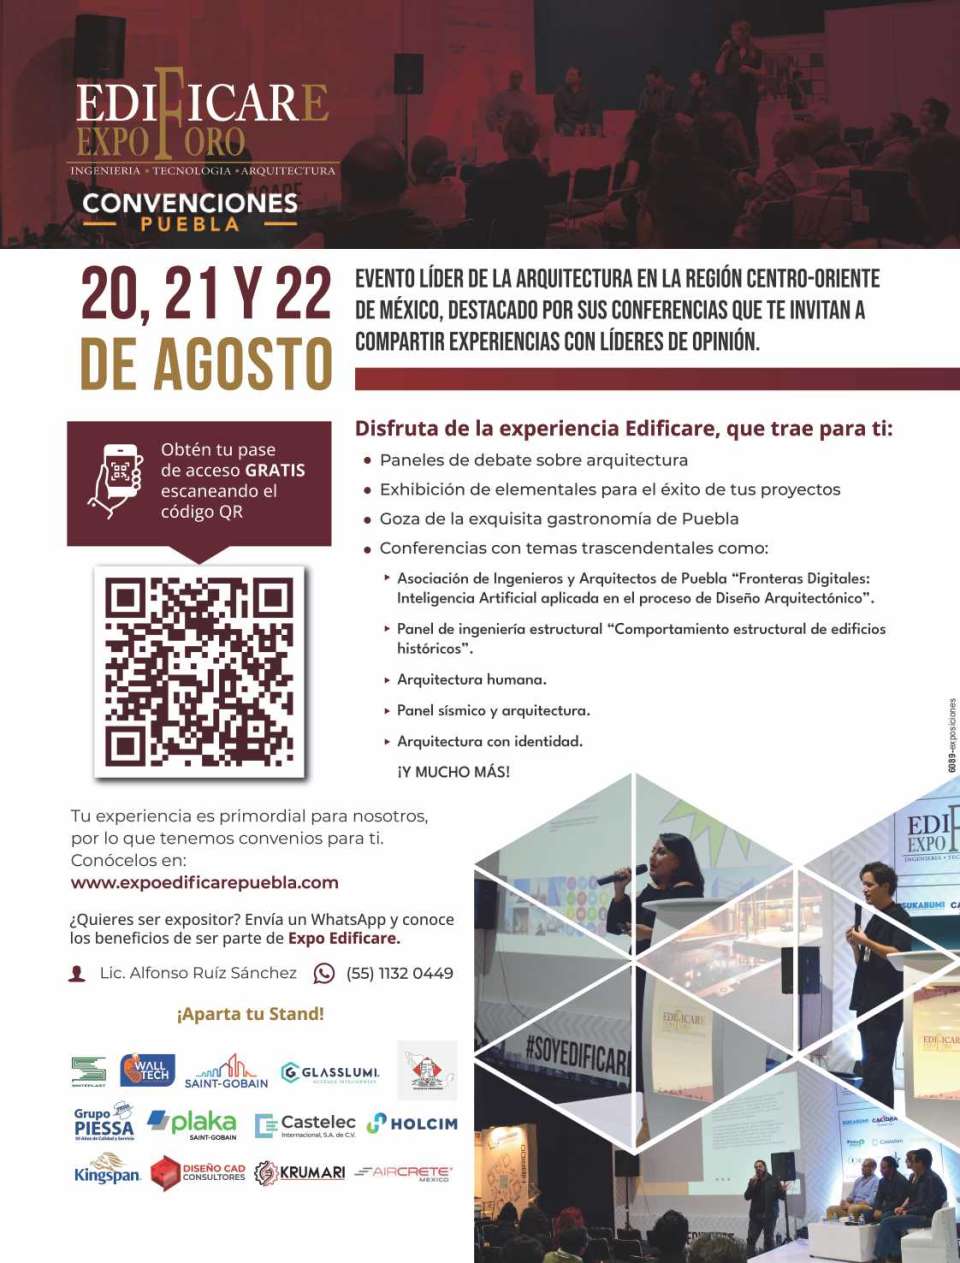 Expo Foro Edificare Puebla. Evento lider en la region Centro-Oriente de Mexico, del 20 al 22 de Agosto 2024 en el Centro de Convenciones William O. Jenkins en la Ciudad de Puebla.